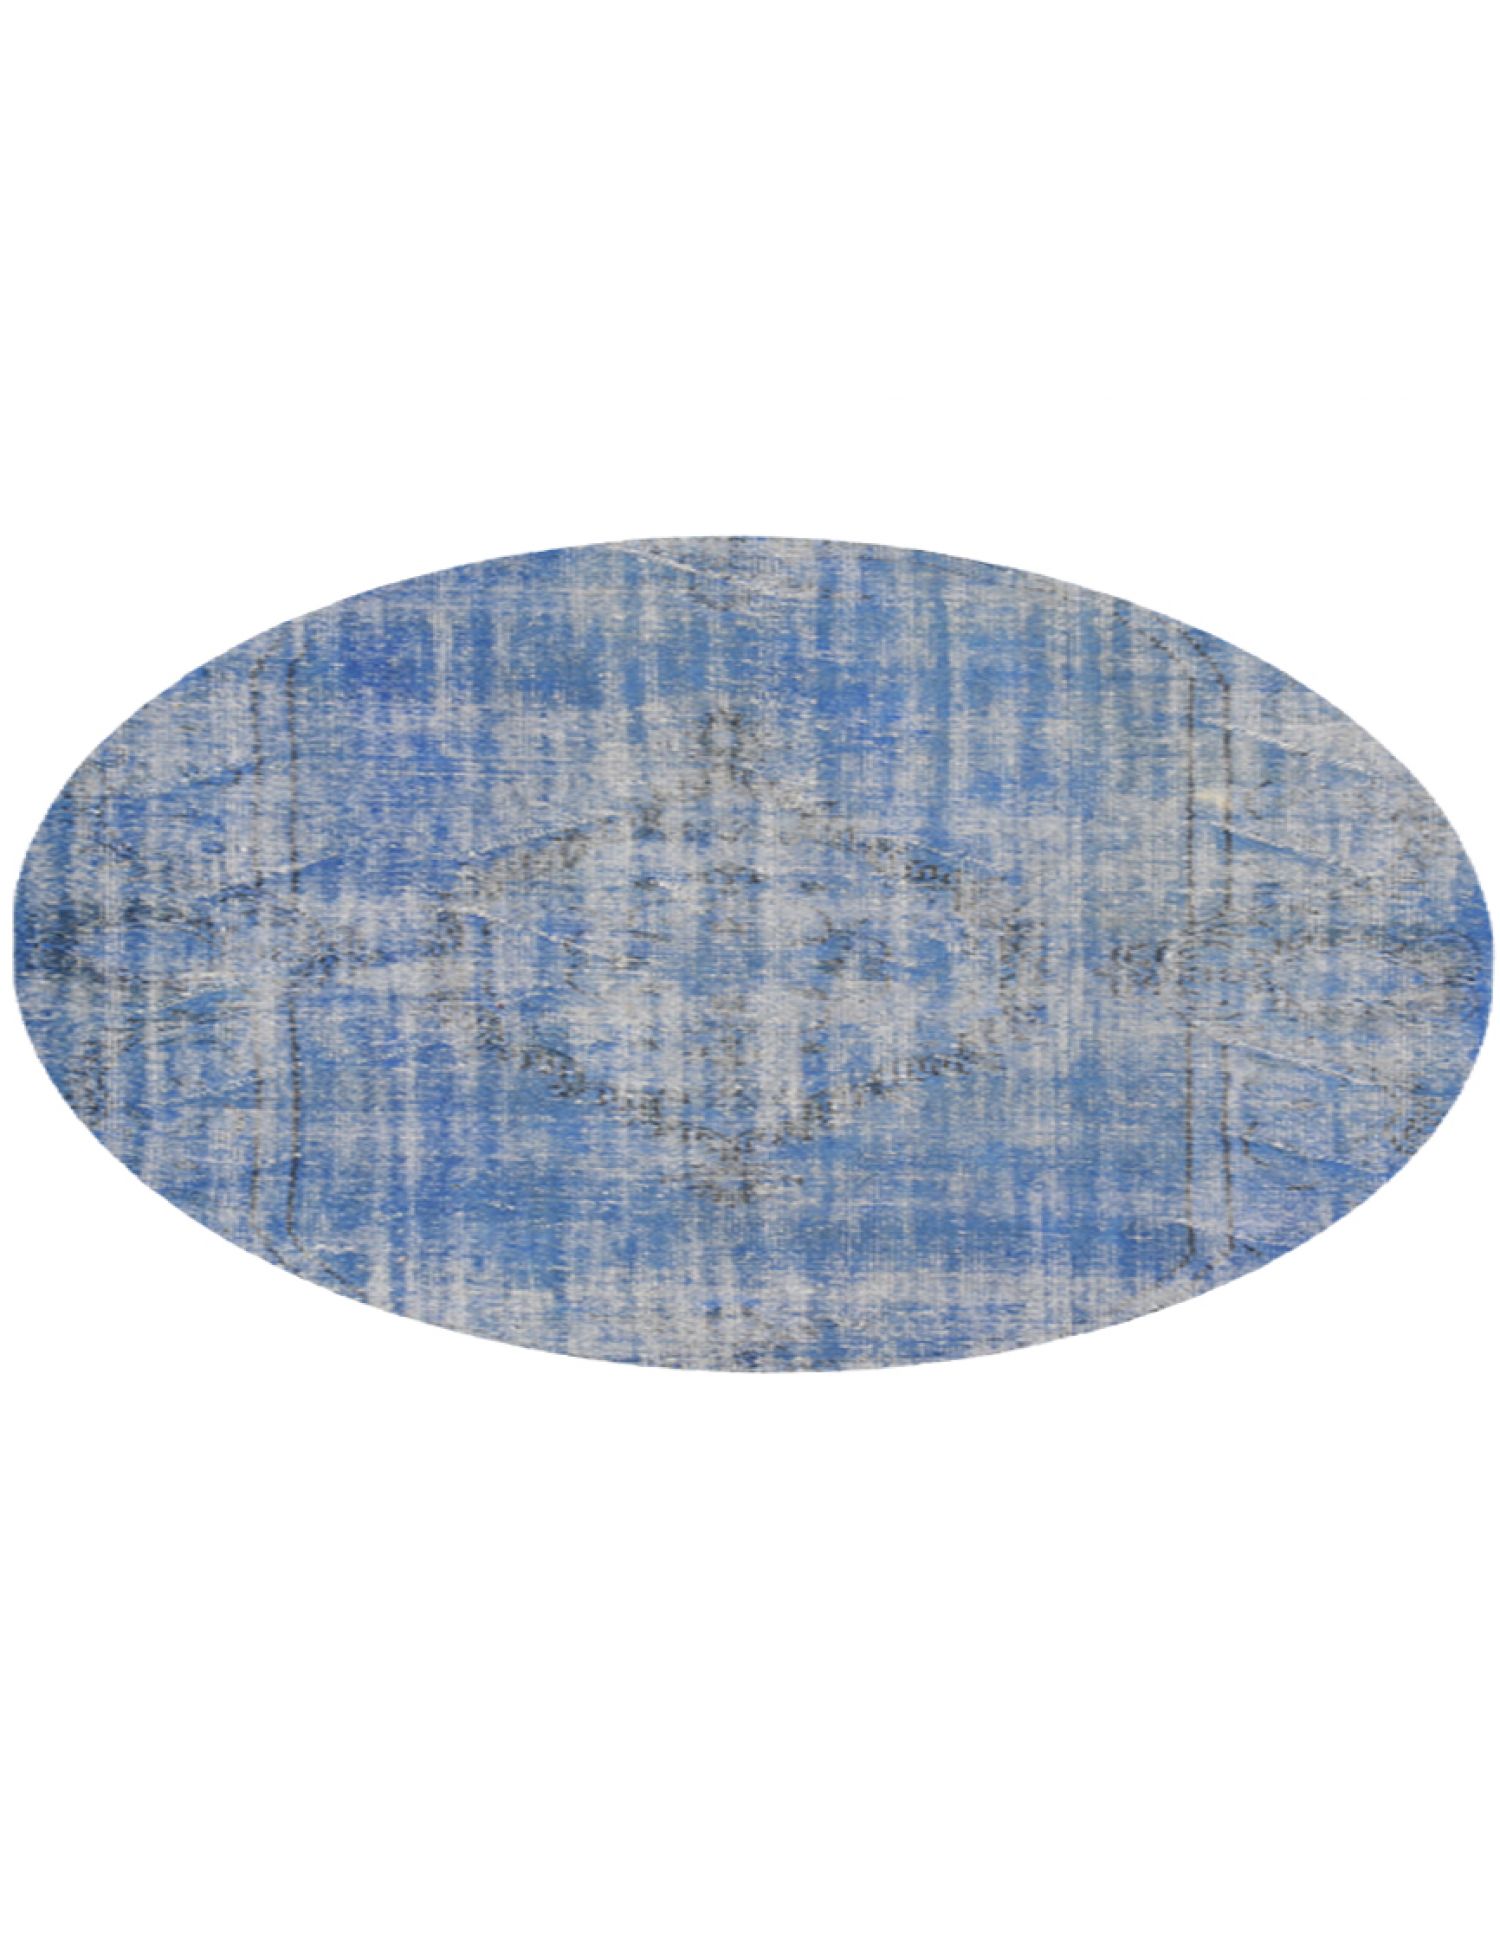 Vintage Teppich  blau <br/>201 x 201 cm